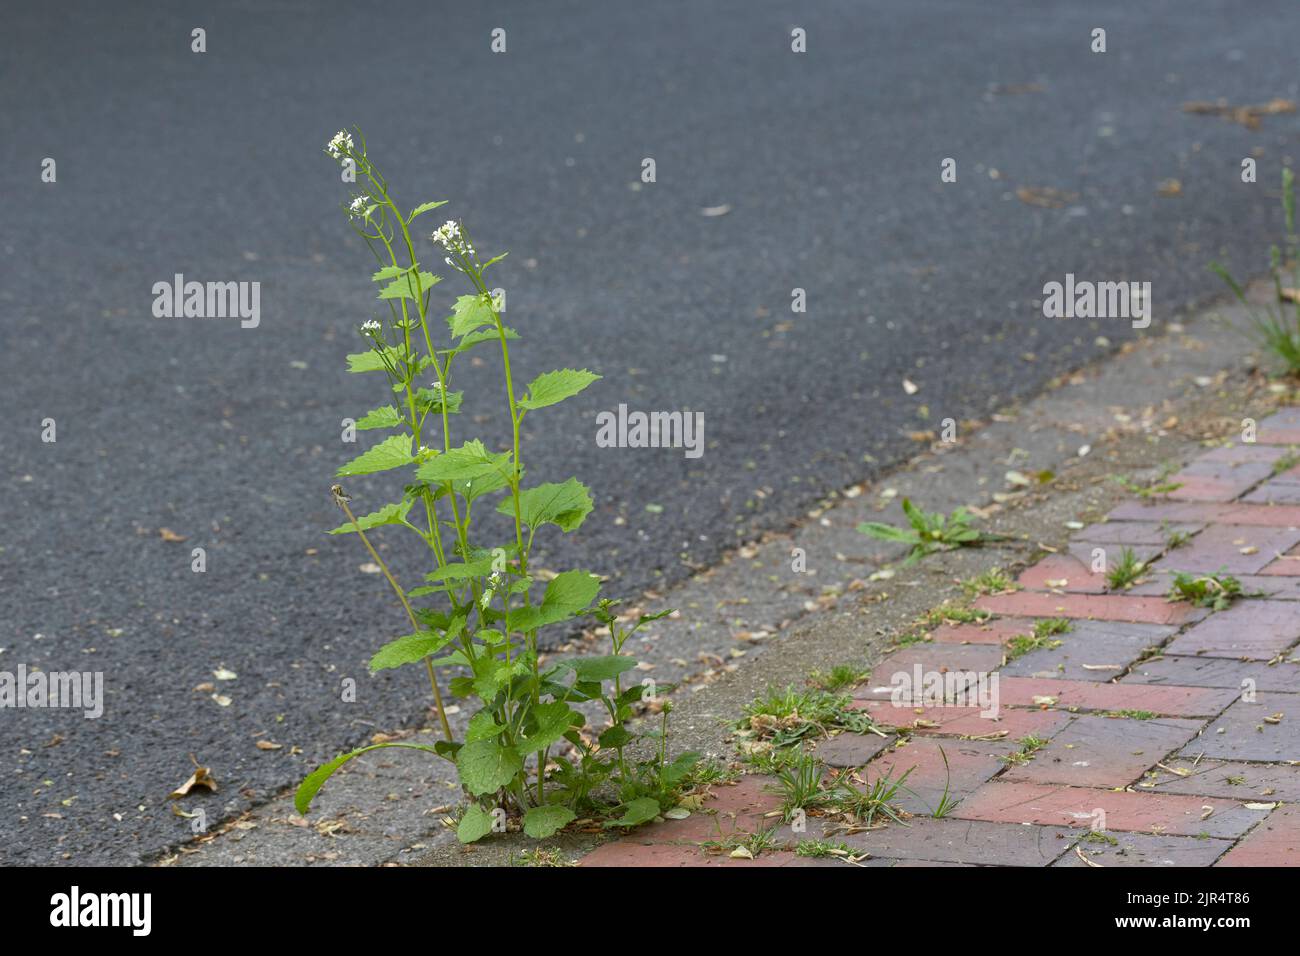 La senape all'aglio, l'aglio dell'orlo, Jack-by-the-Hedge (Alliaria petiolata), cresce in un vuoto di pavimentazione, in Germania Foto Stock